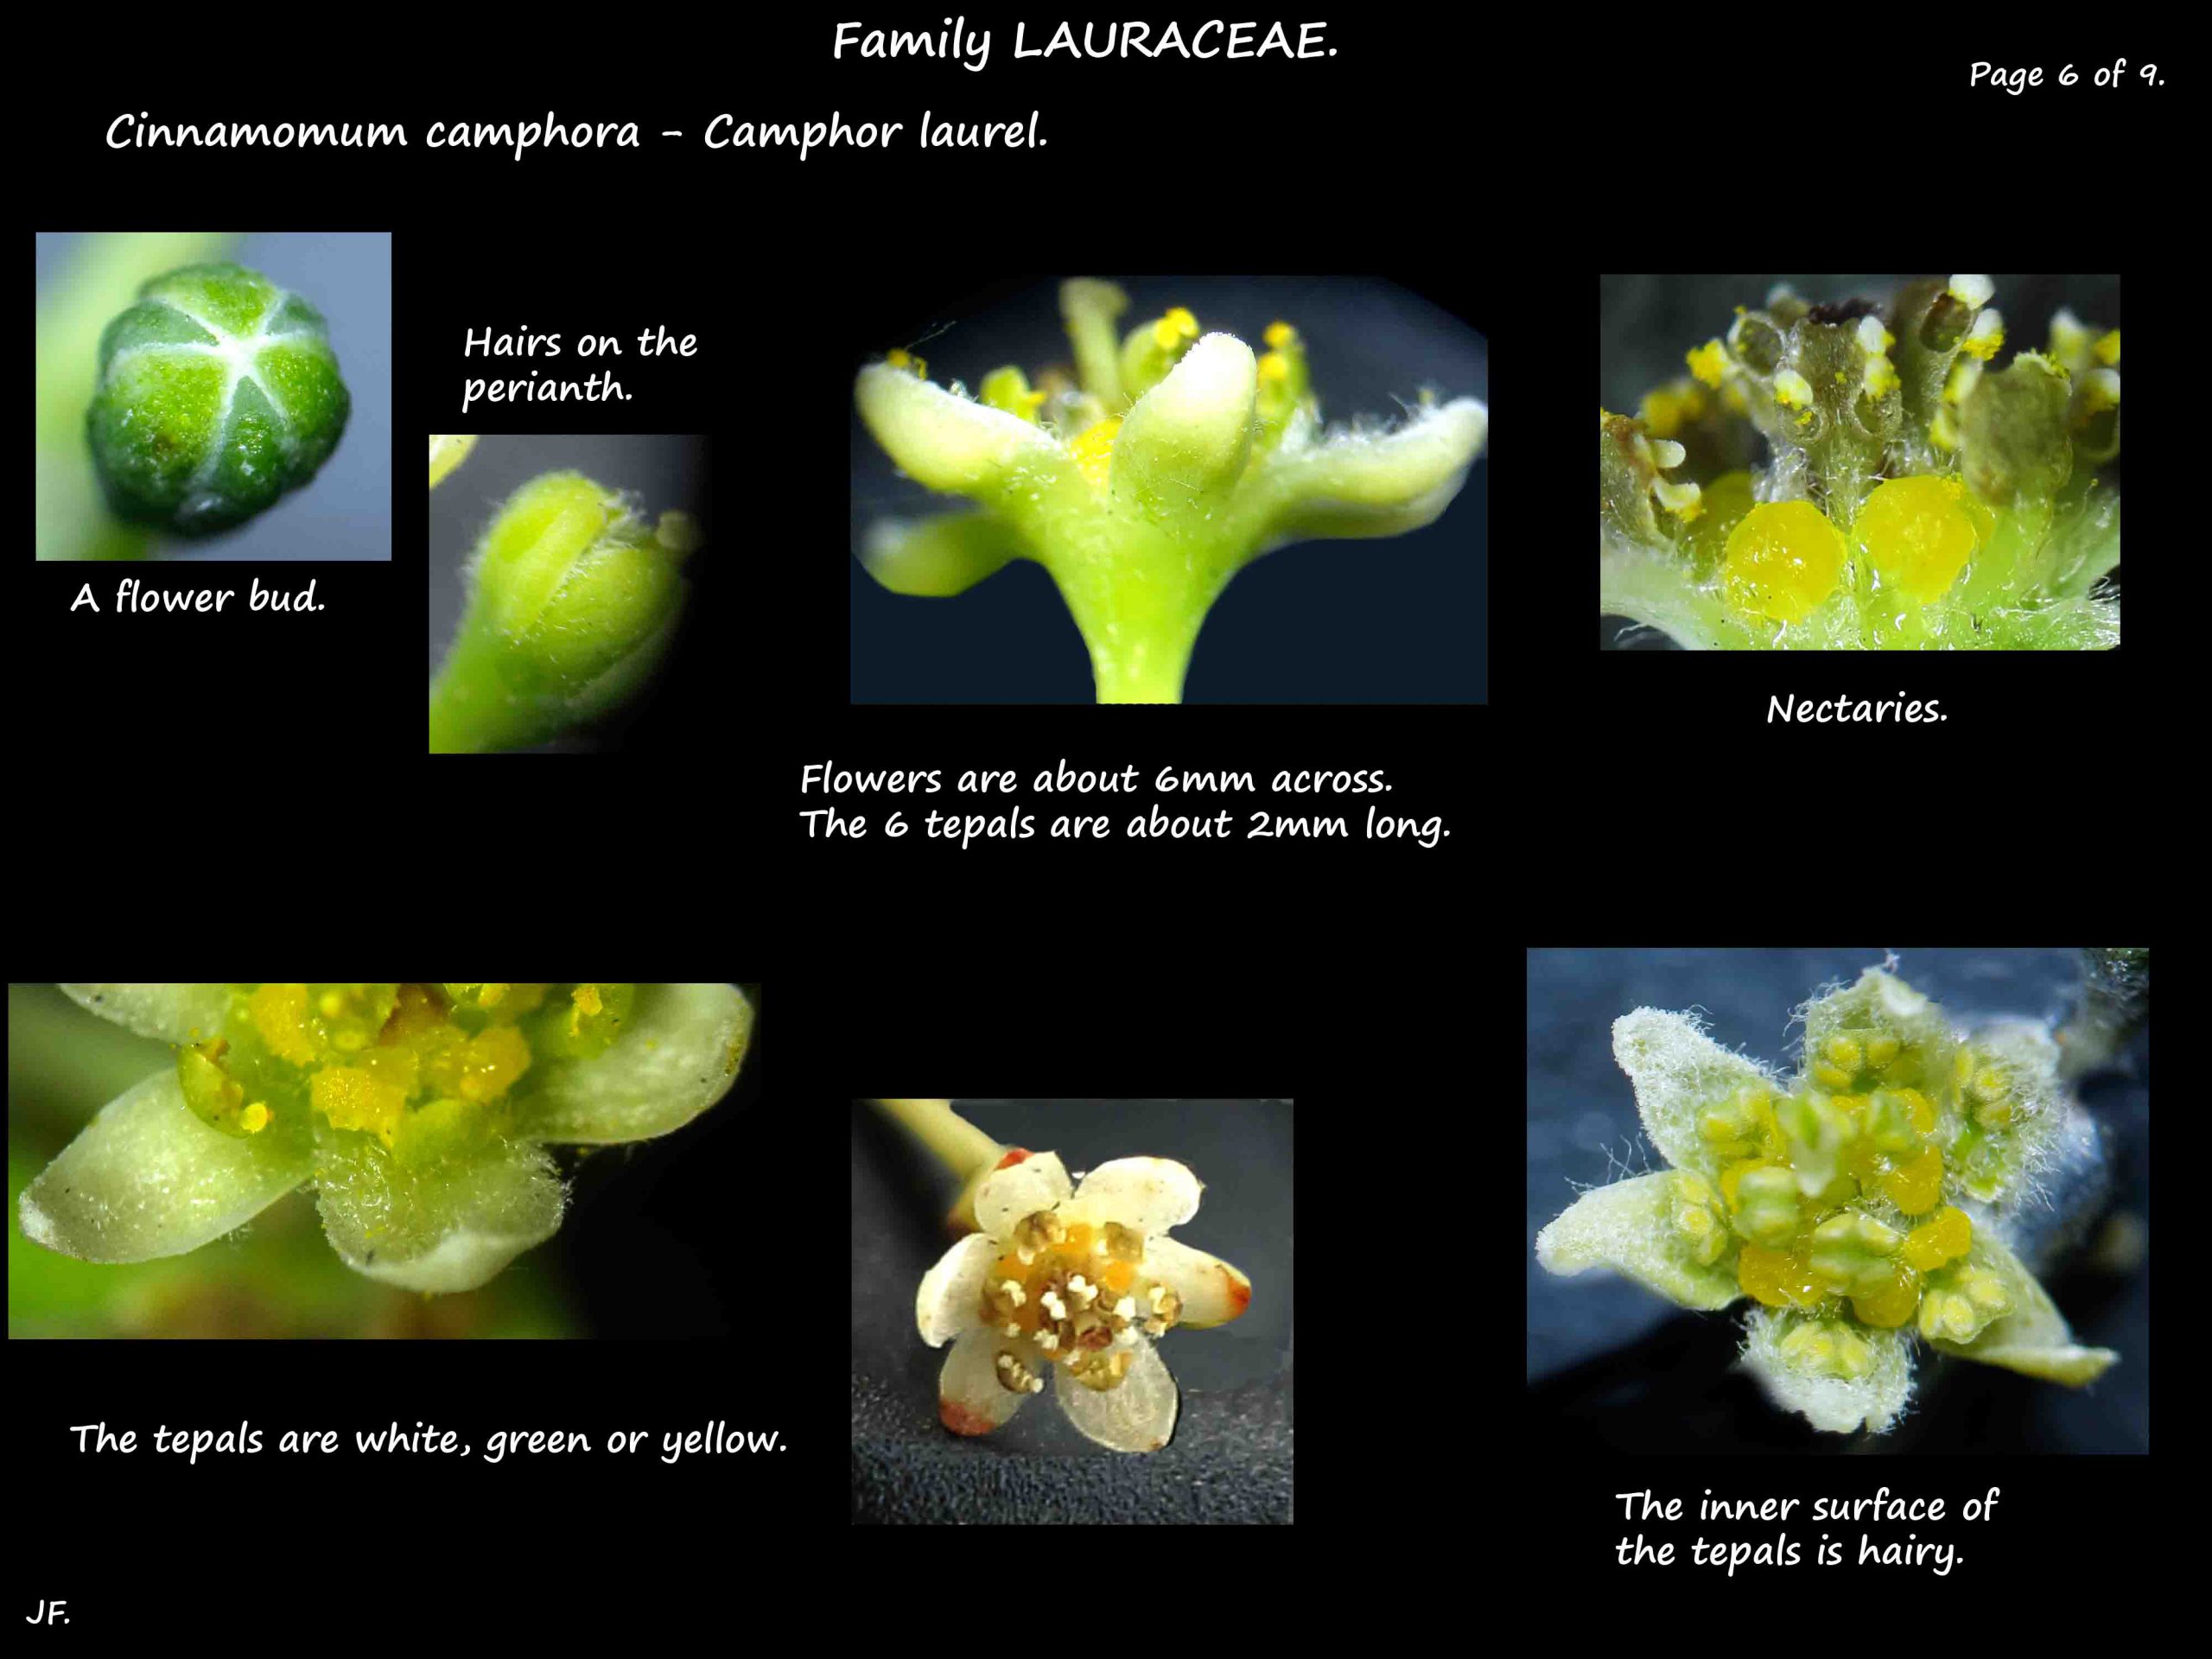 6 Camphor laurel flowers